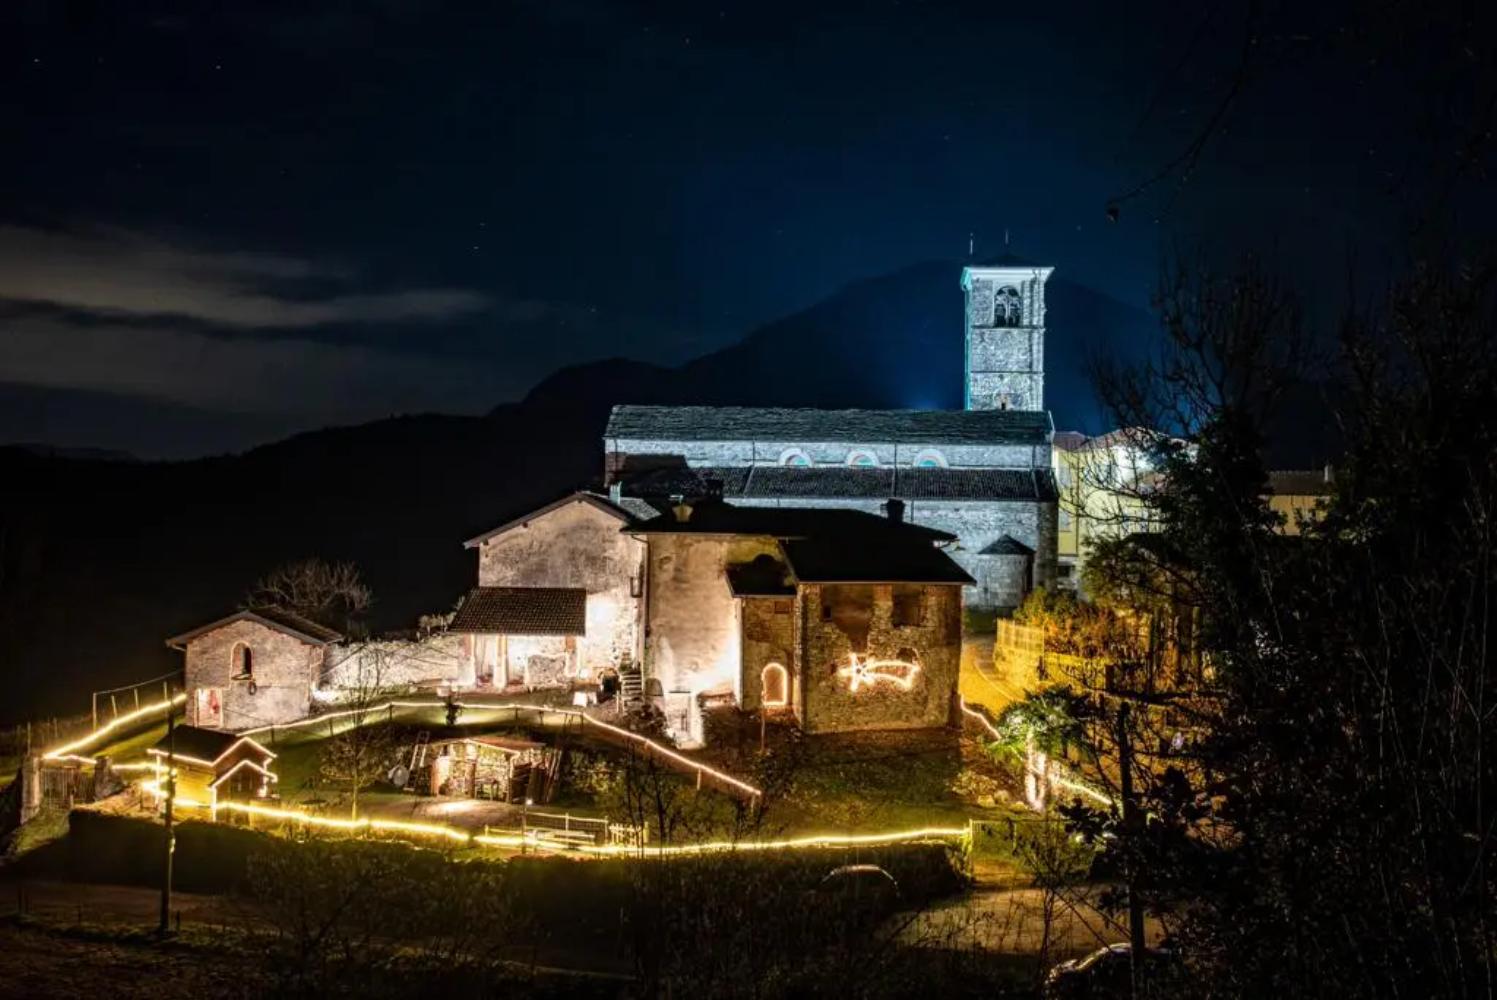 Night view of the Living Nativity in the Rectory in Brezzo di Bedero